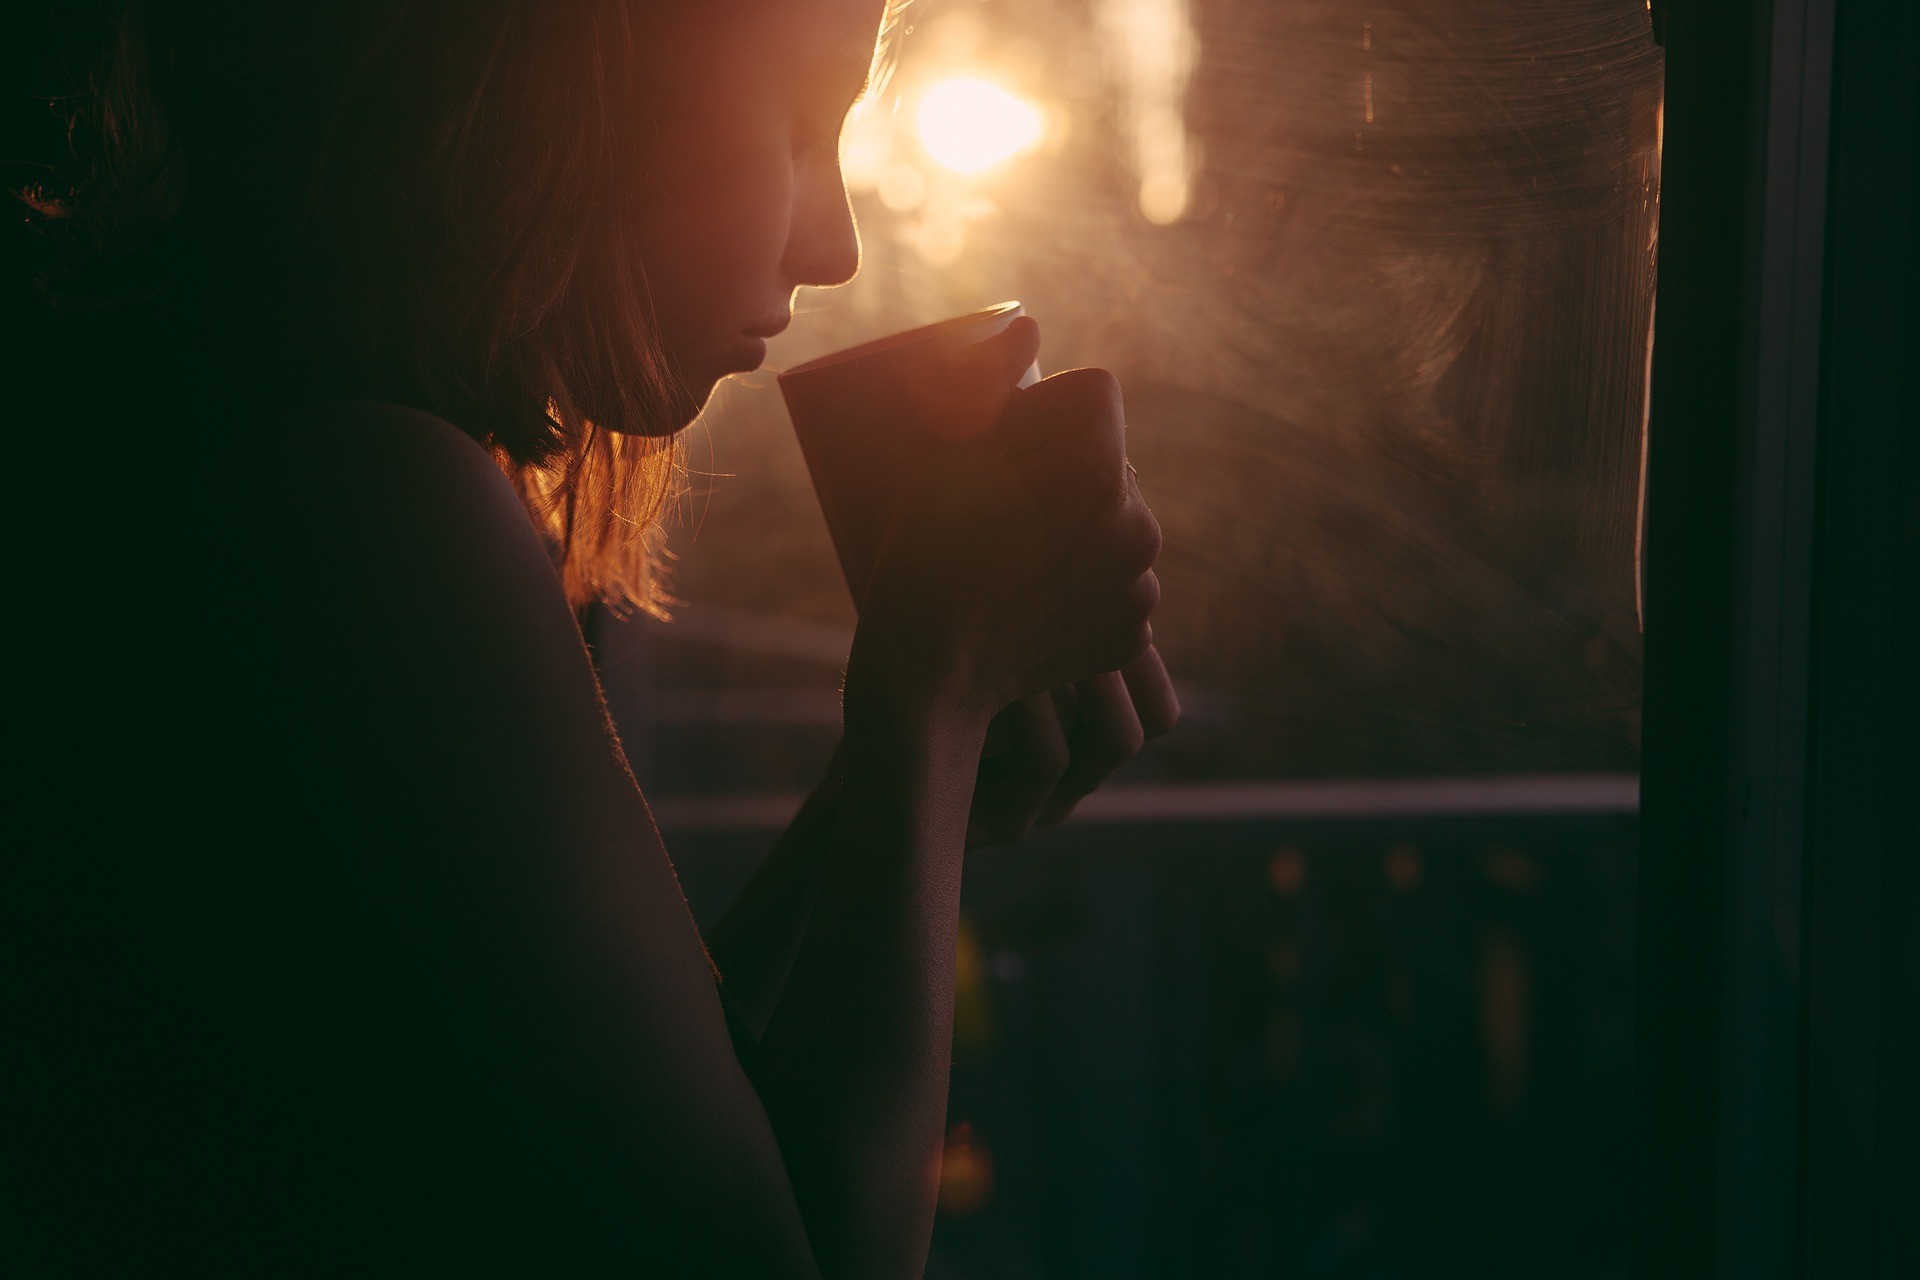 mulher tomando chá quente (Foto: Pixabay)